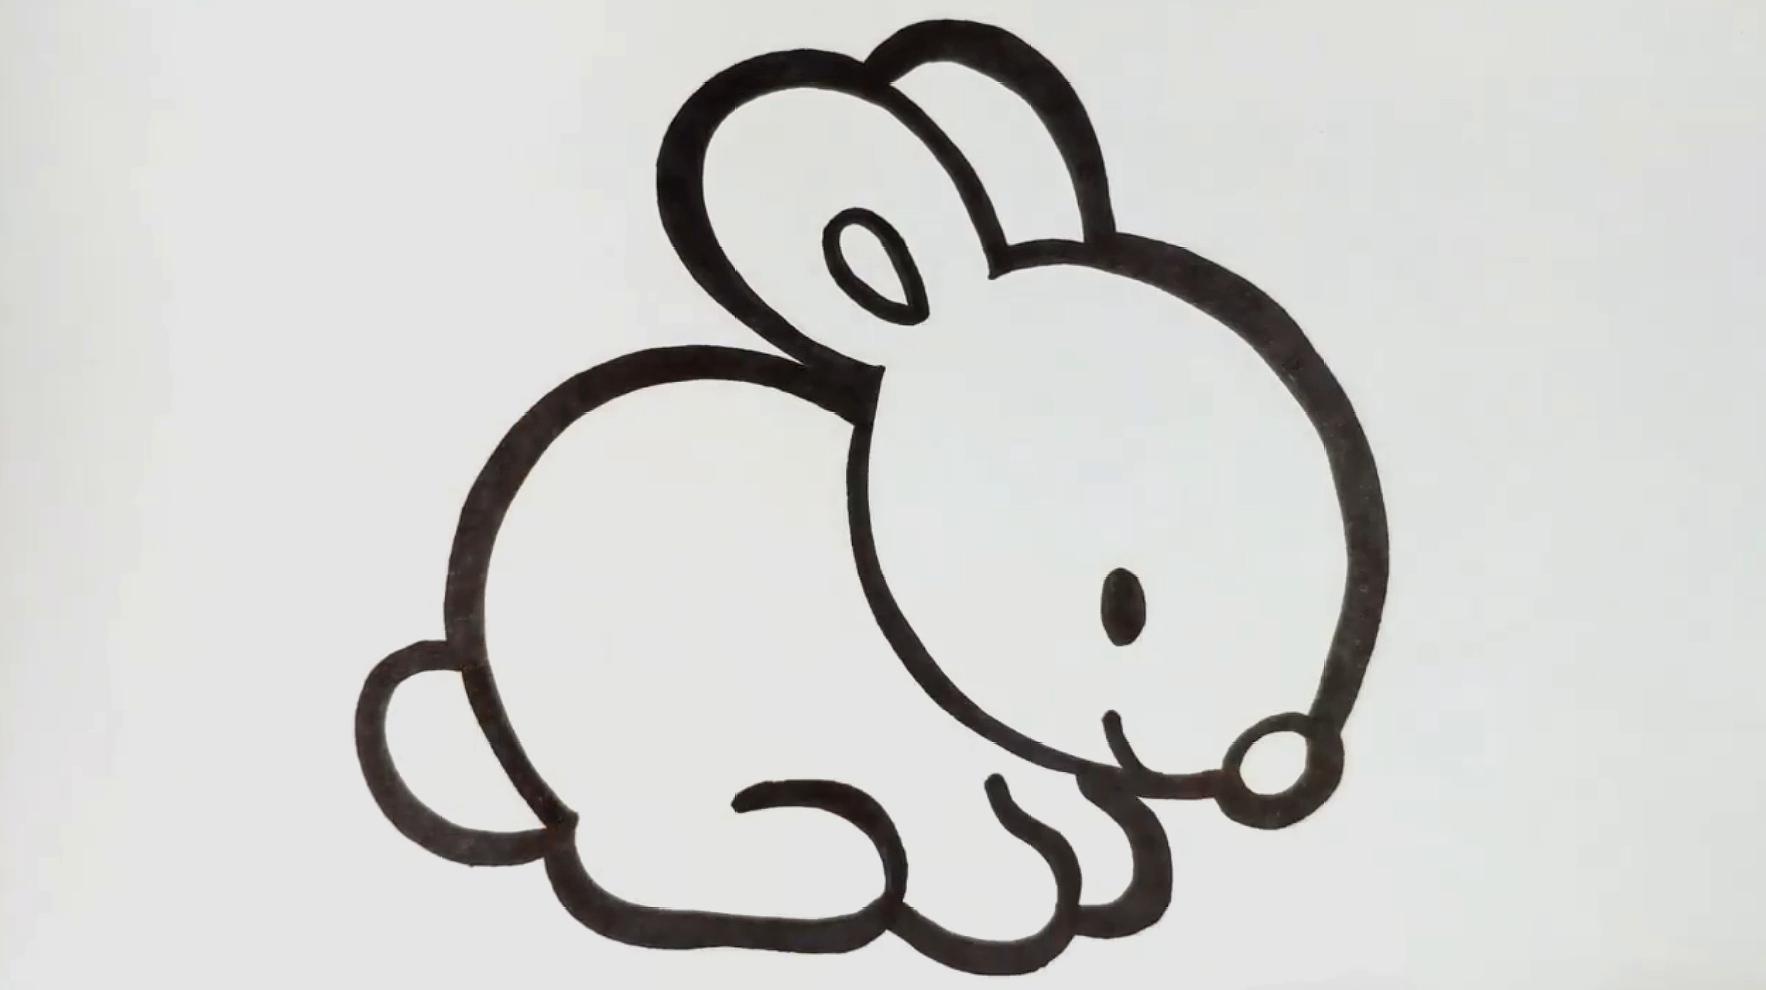 兔子简化画法图片